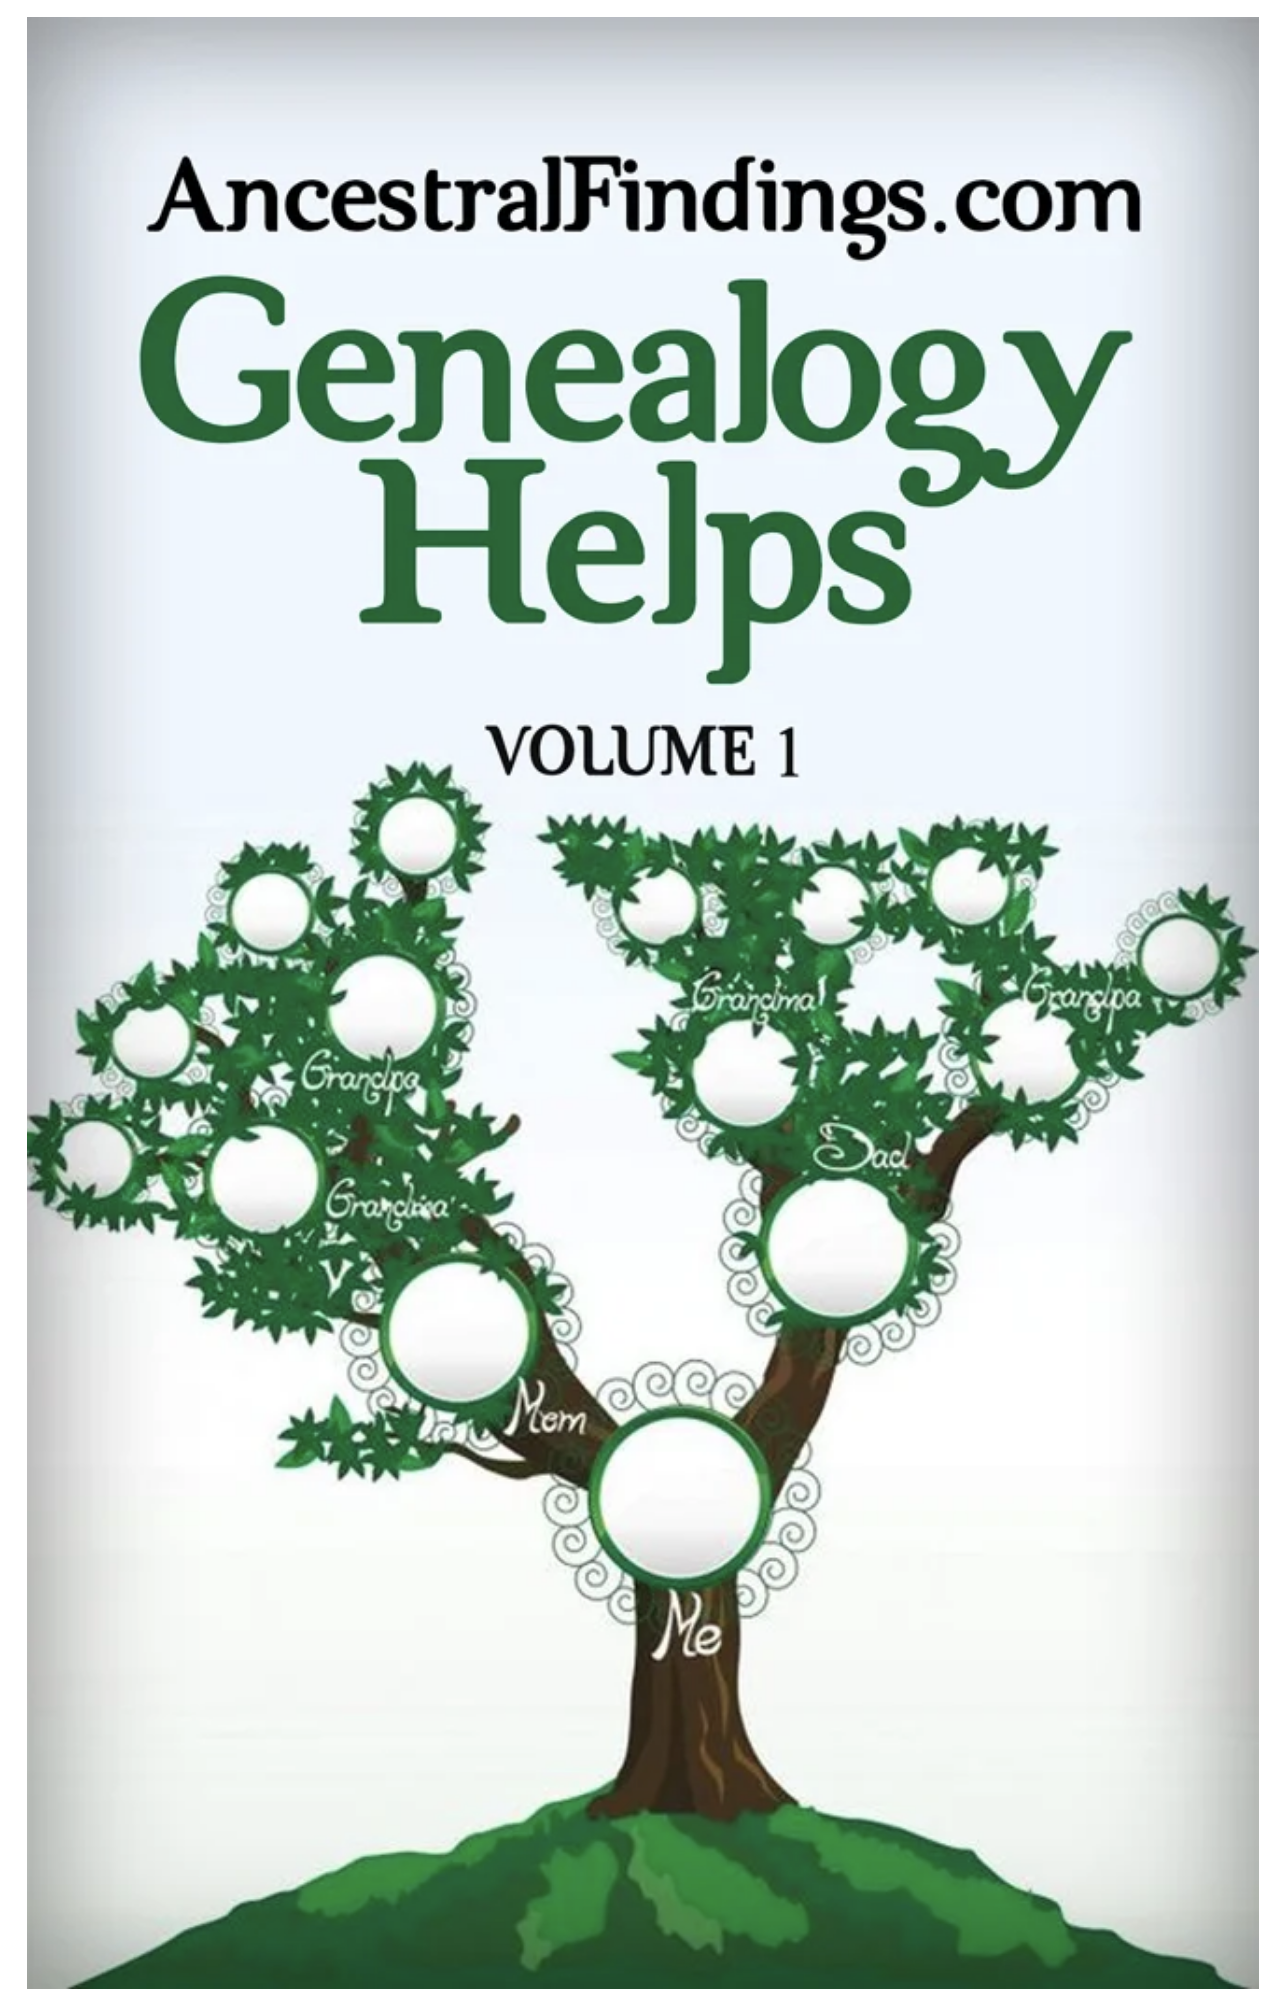 Free Genealogy eBooks